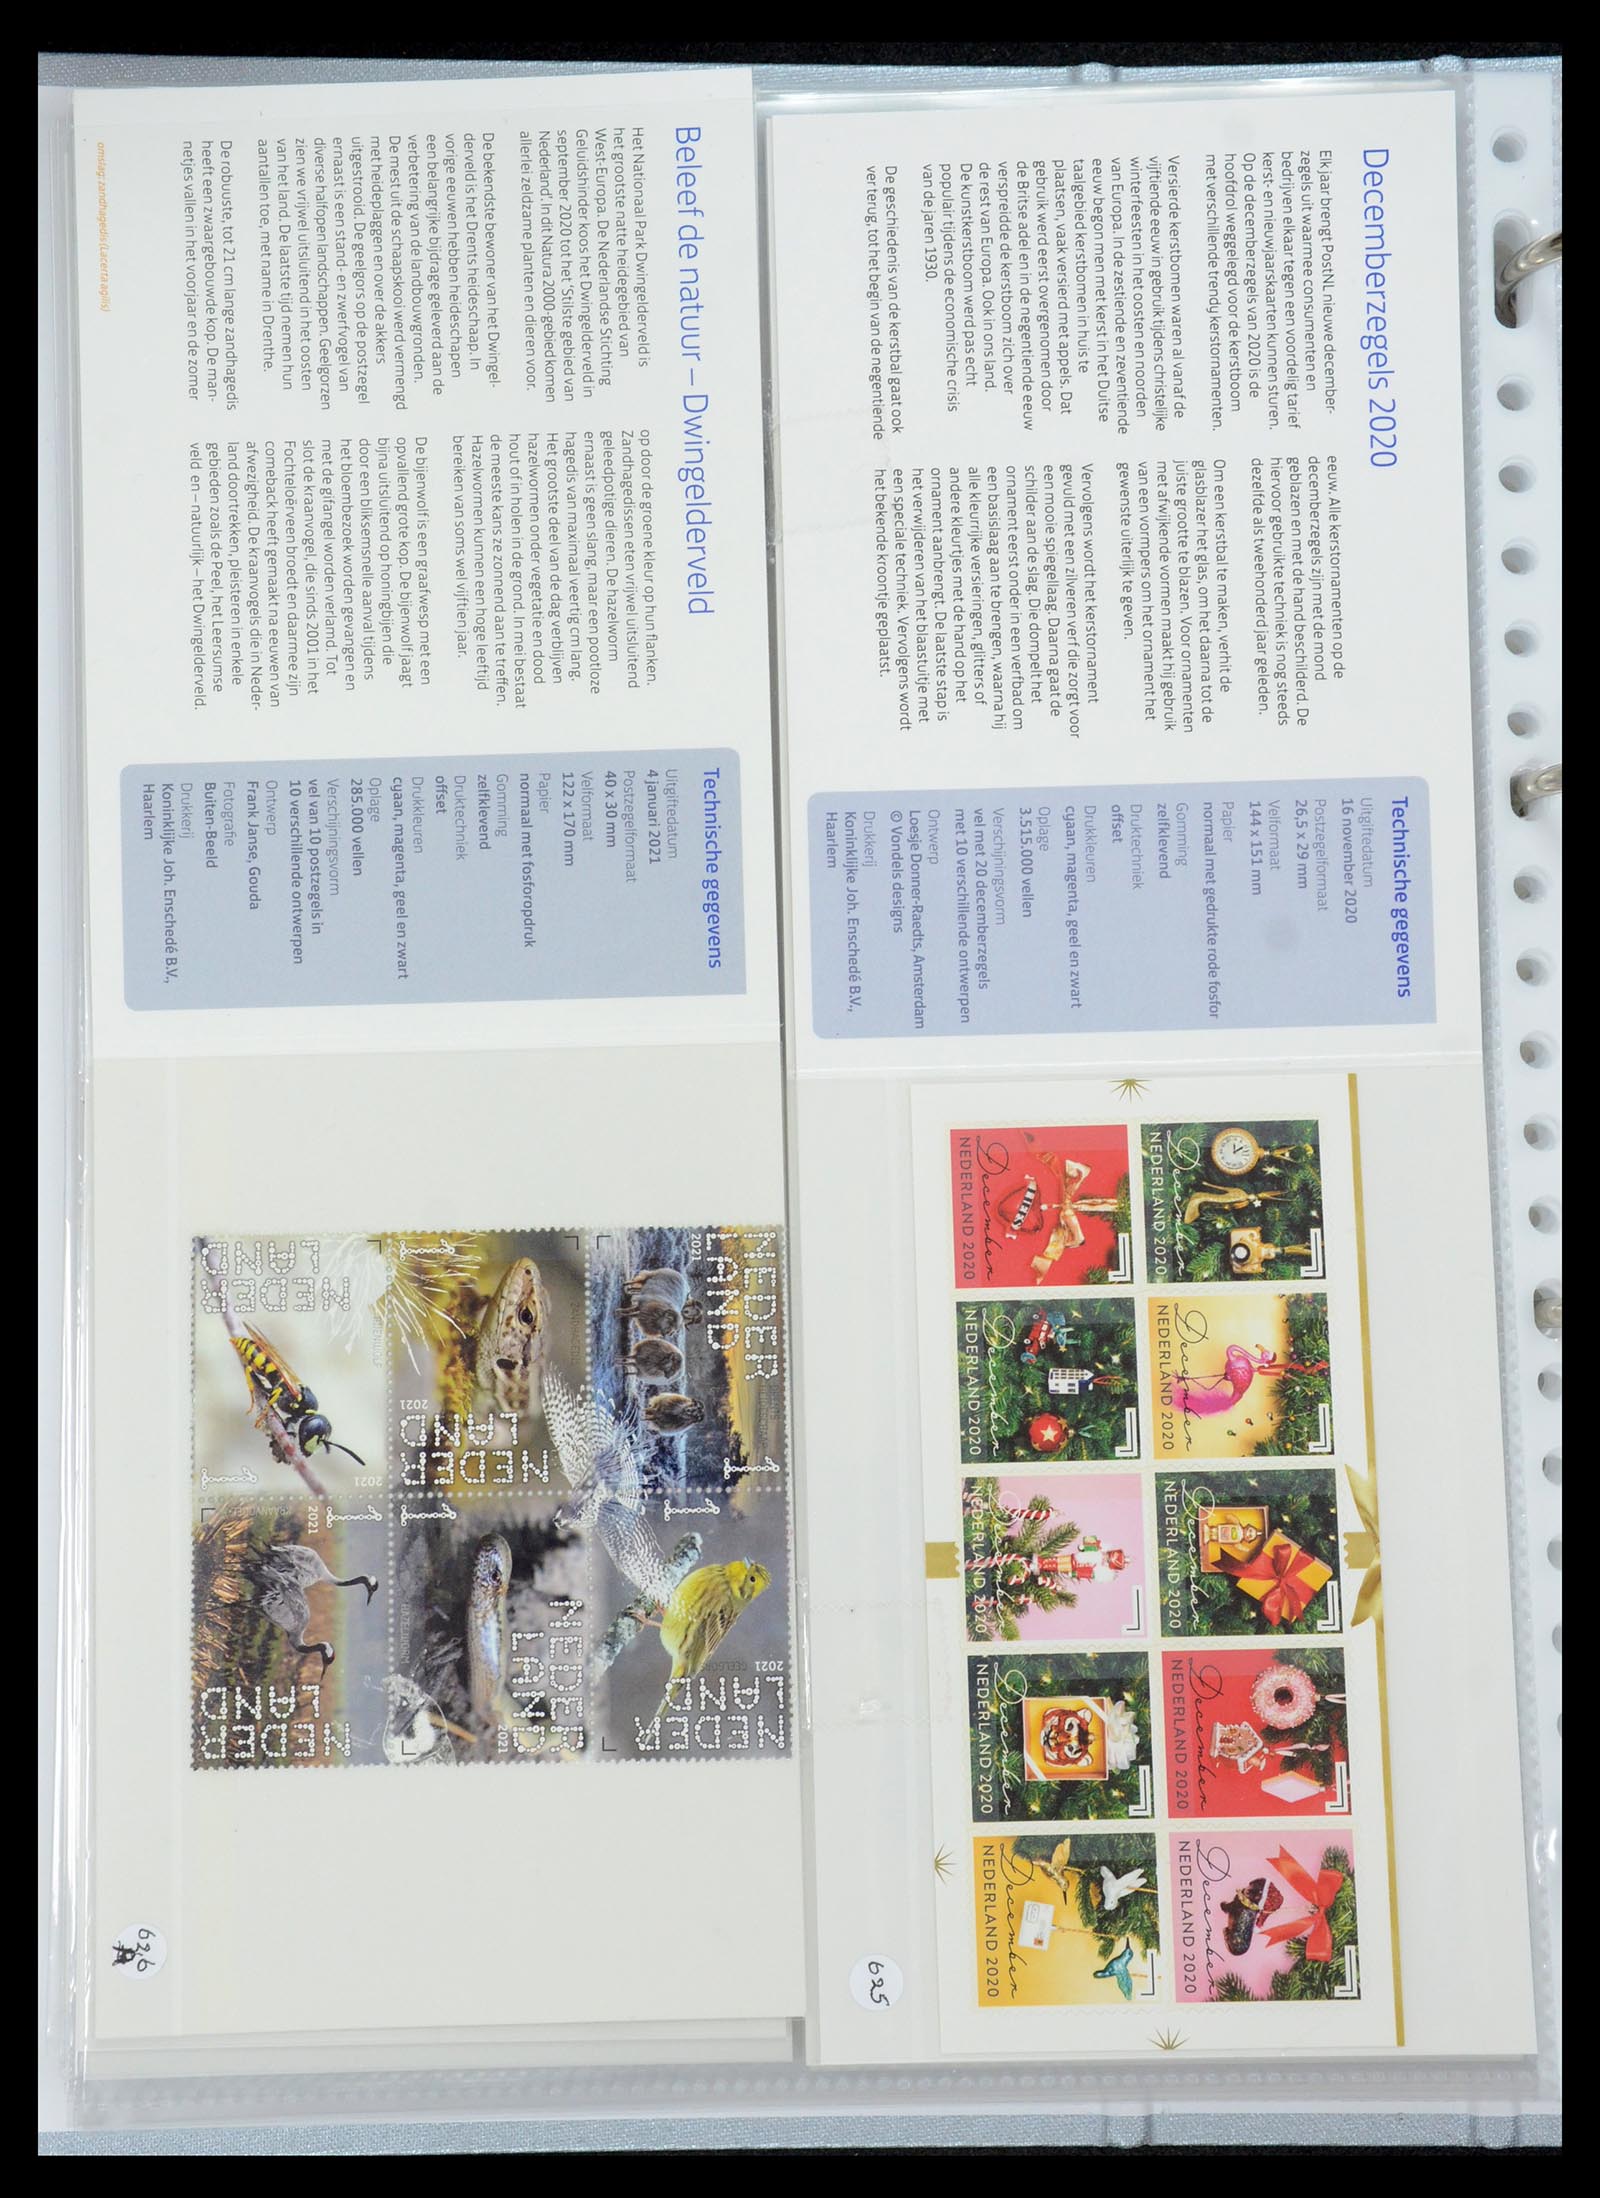 35692 379 - Stamp Collection 35692 Netherlands presentation packs 1982-2021!!